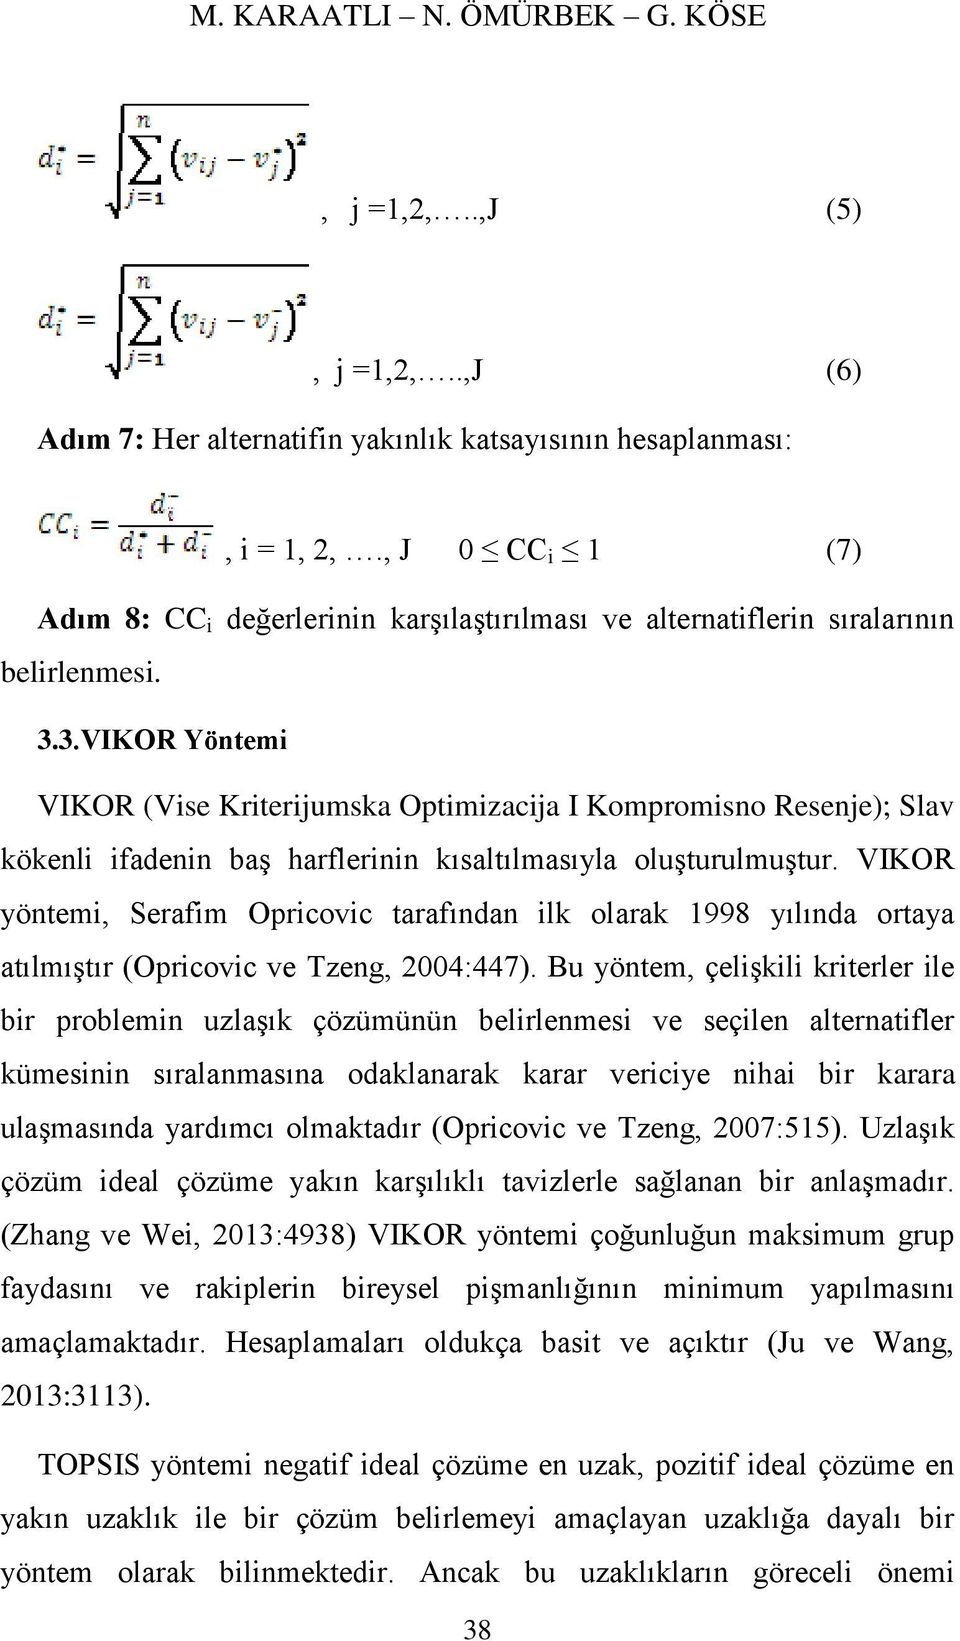 3.VIKOR Yöntemi VIKOR (Vise Kriterijumska Optimizacija I Kompromisno Resenje); Slav kökenli ifadenin baş harflerinin kısaltılmasıyla oluşturulmuştur.